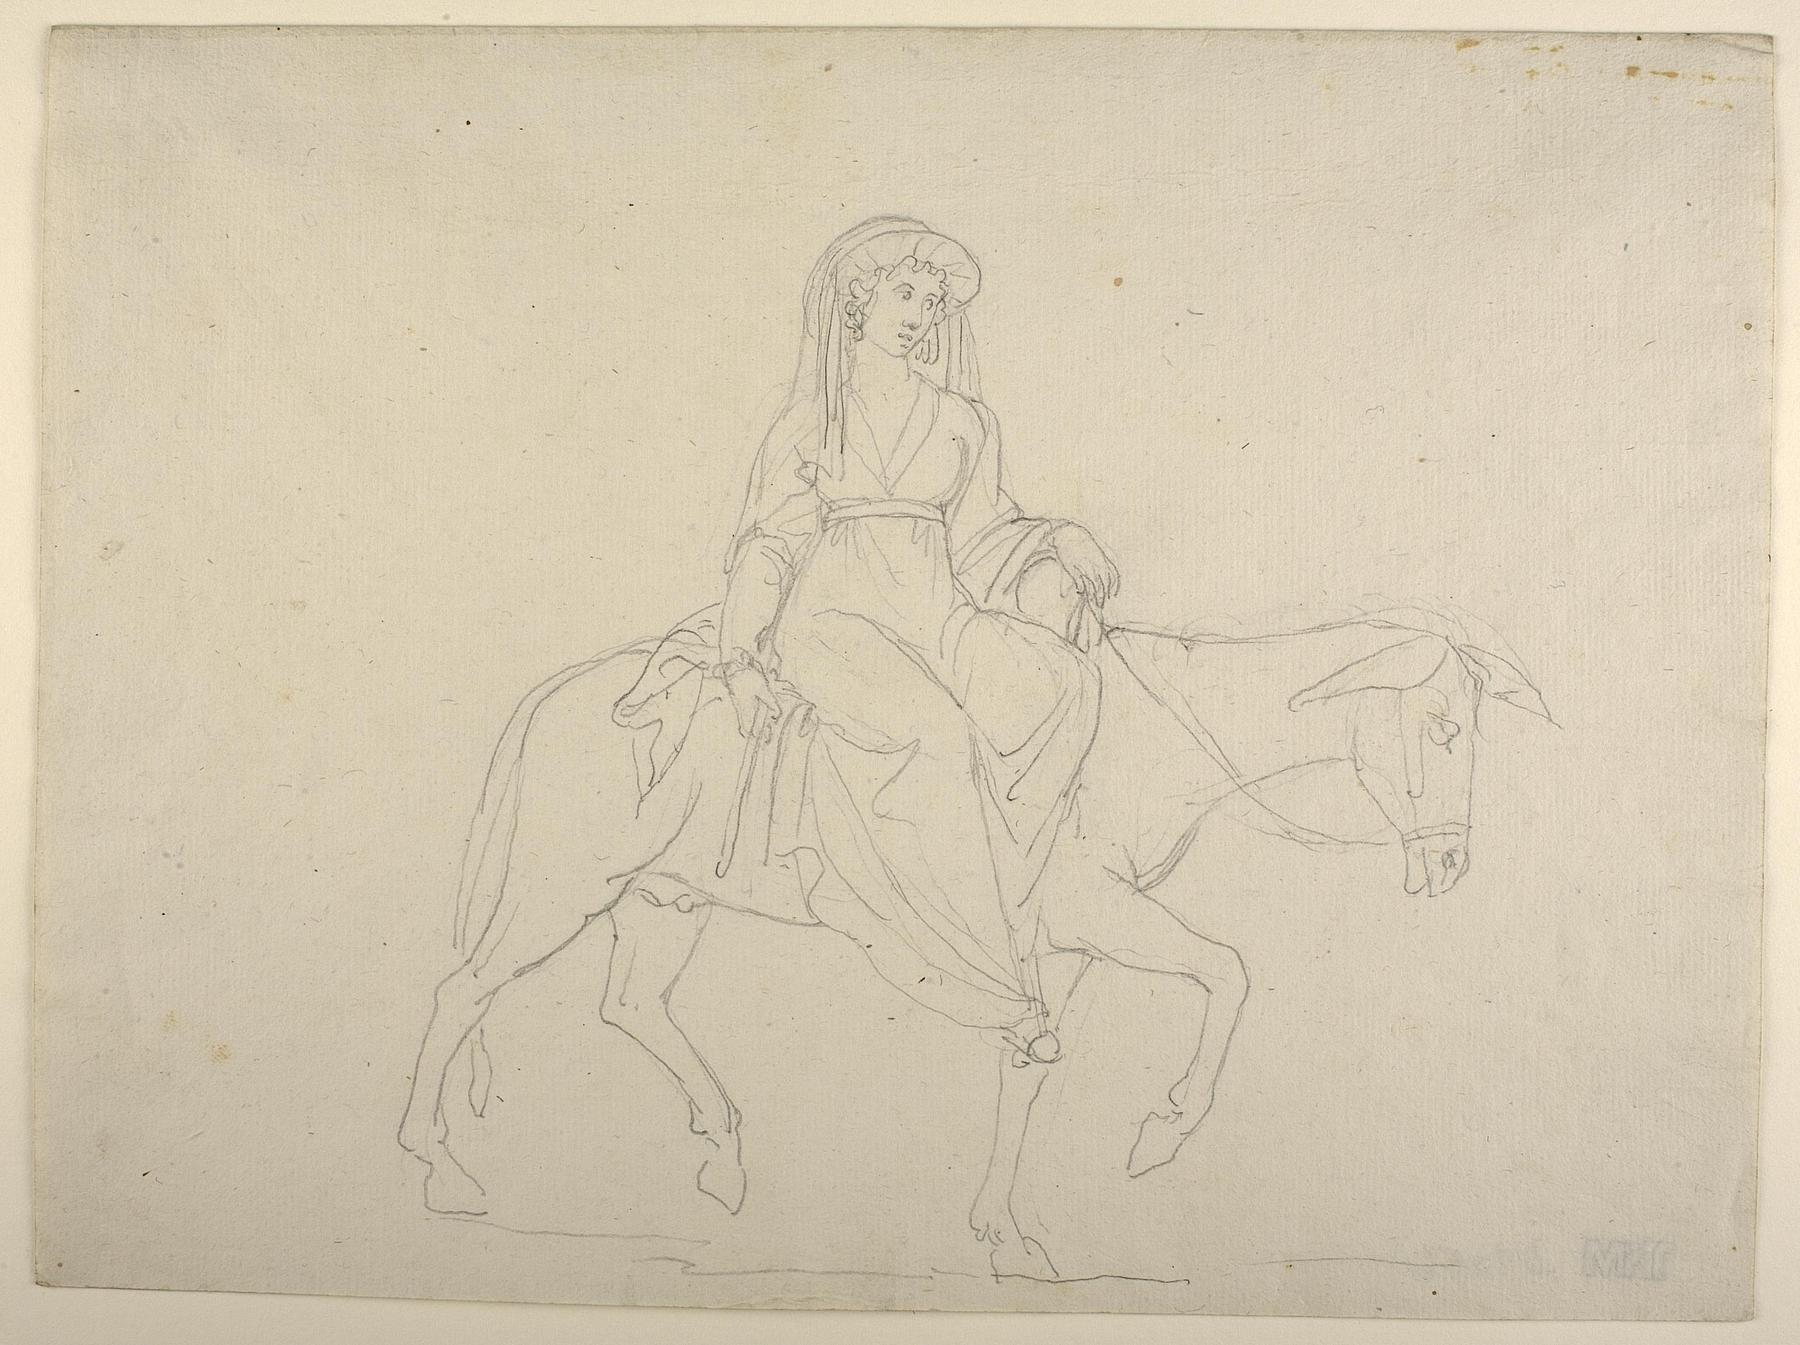 Woman Riding on a Donkey, D1056